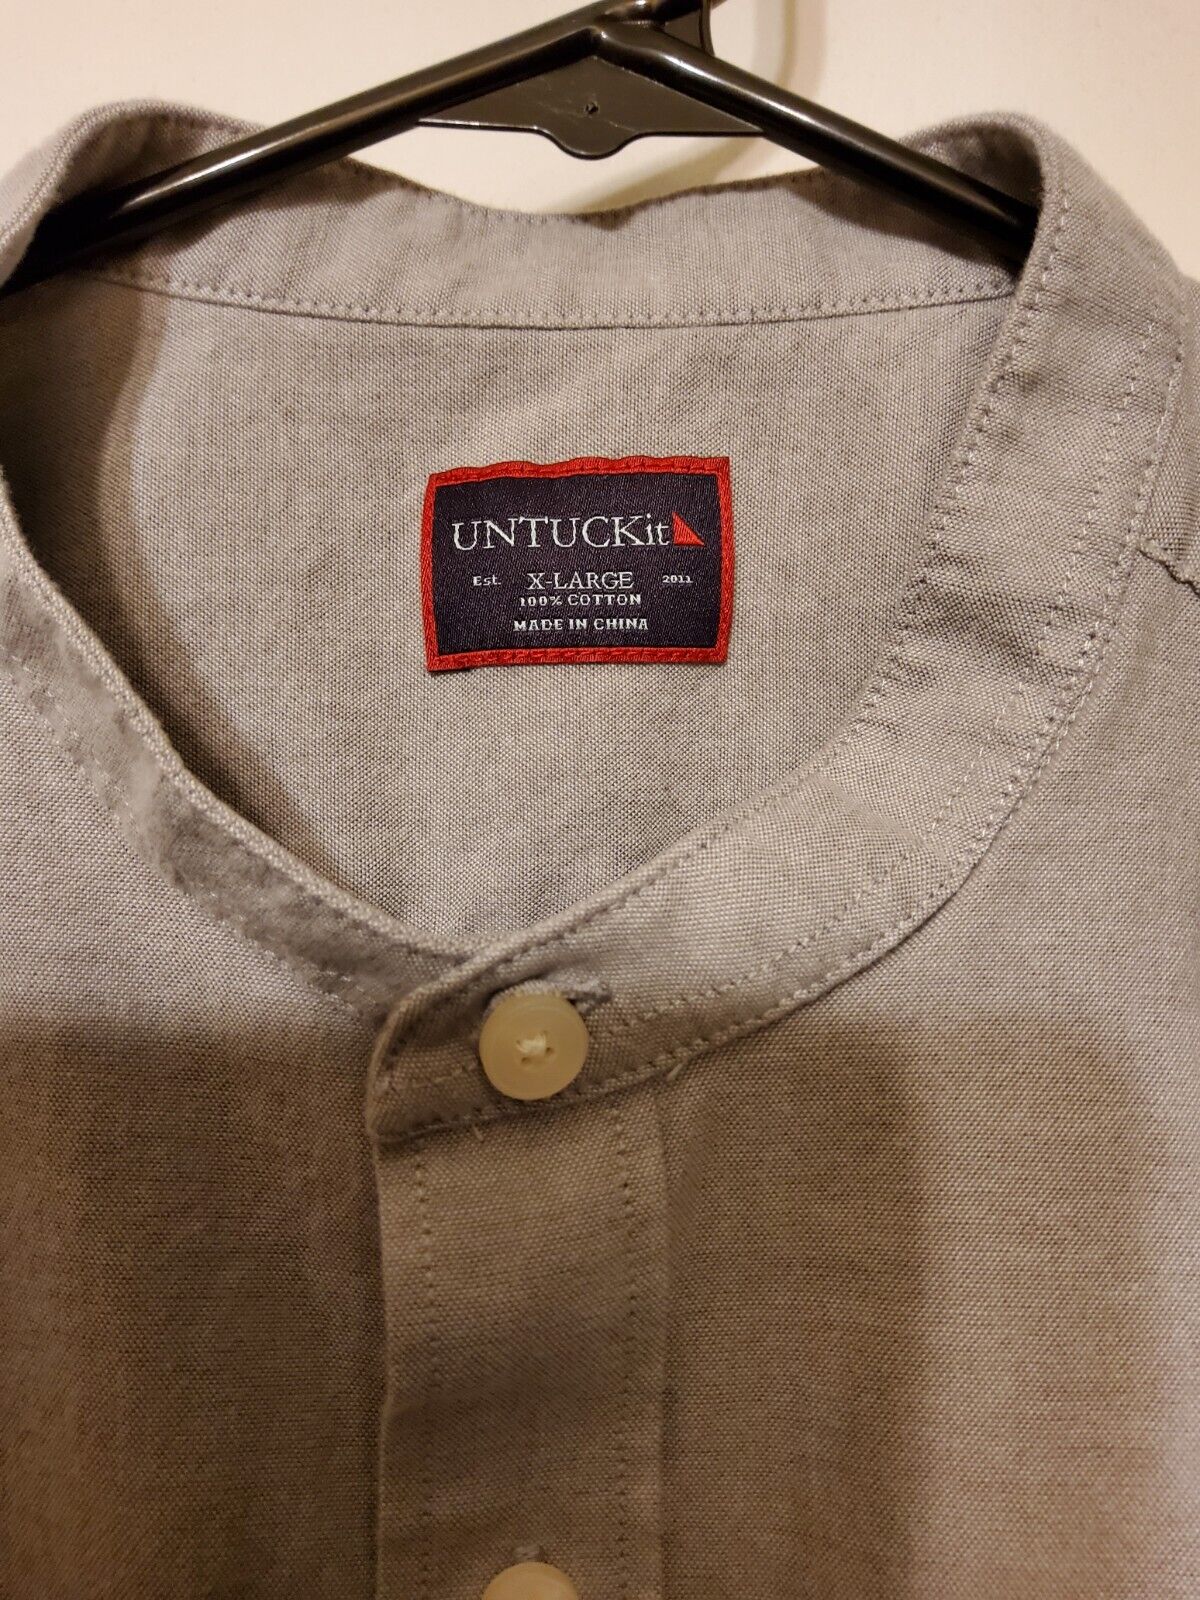 EUC! Mens UNTUCKit Light Gray 100% Cotton Button Long Sleeve Shirt SZ XL